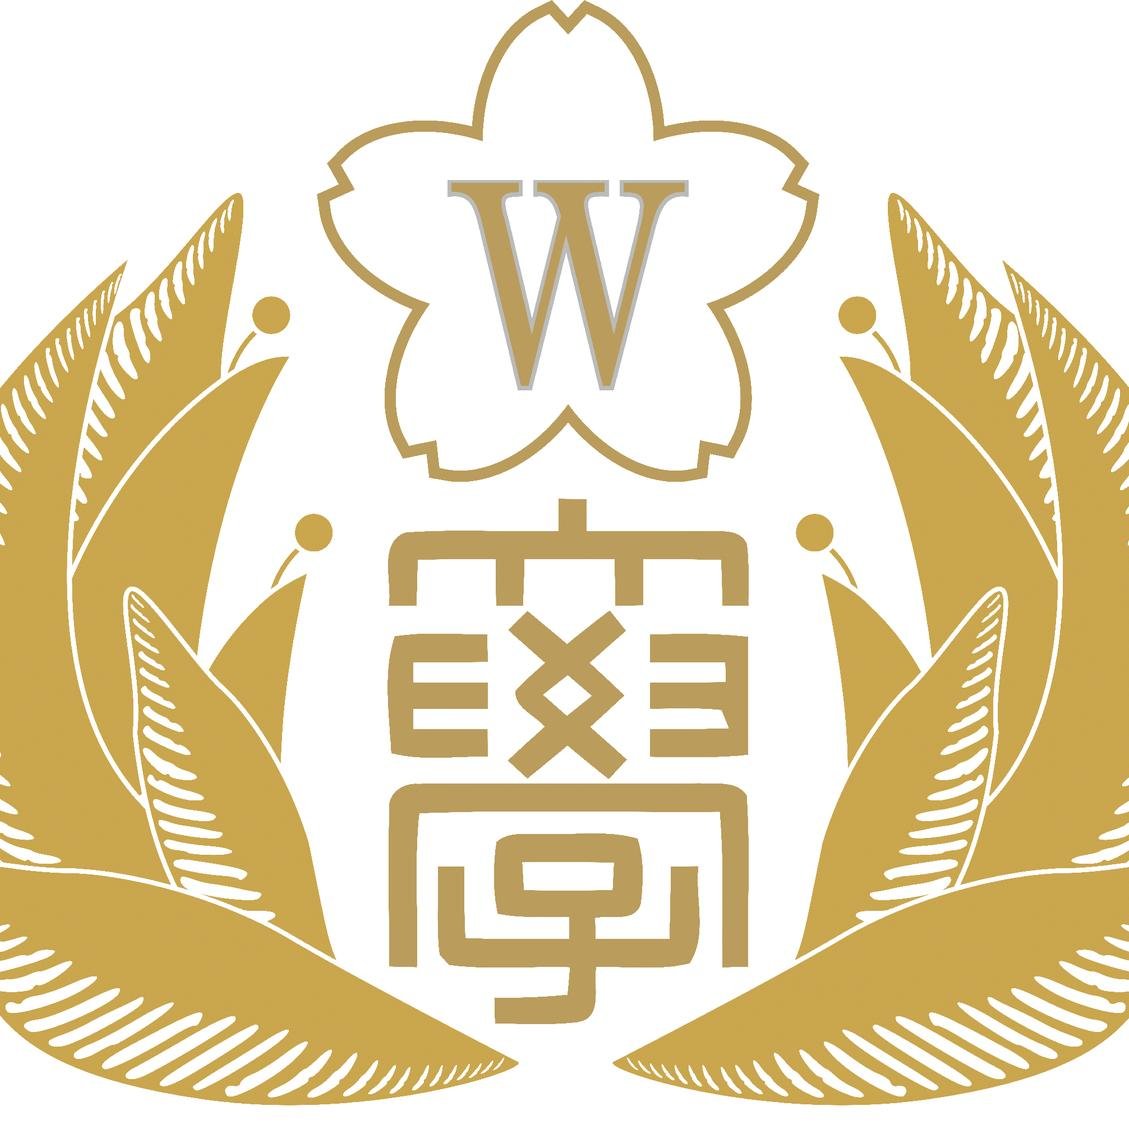 日本ウェルネススポーツ大学サッカー部公式アカウントです。